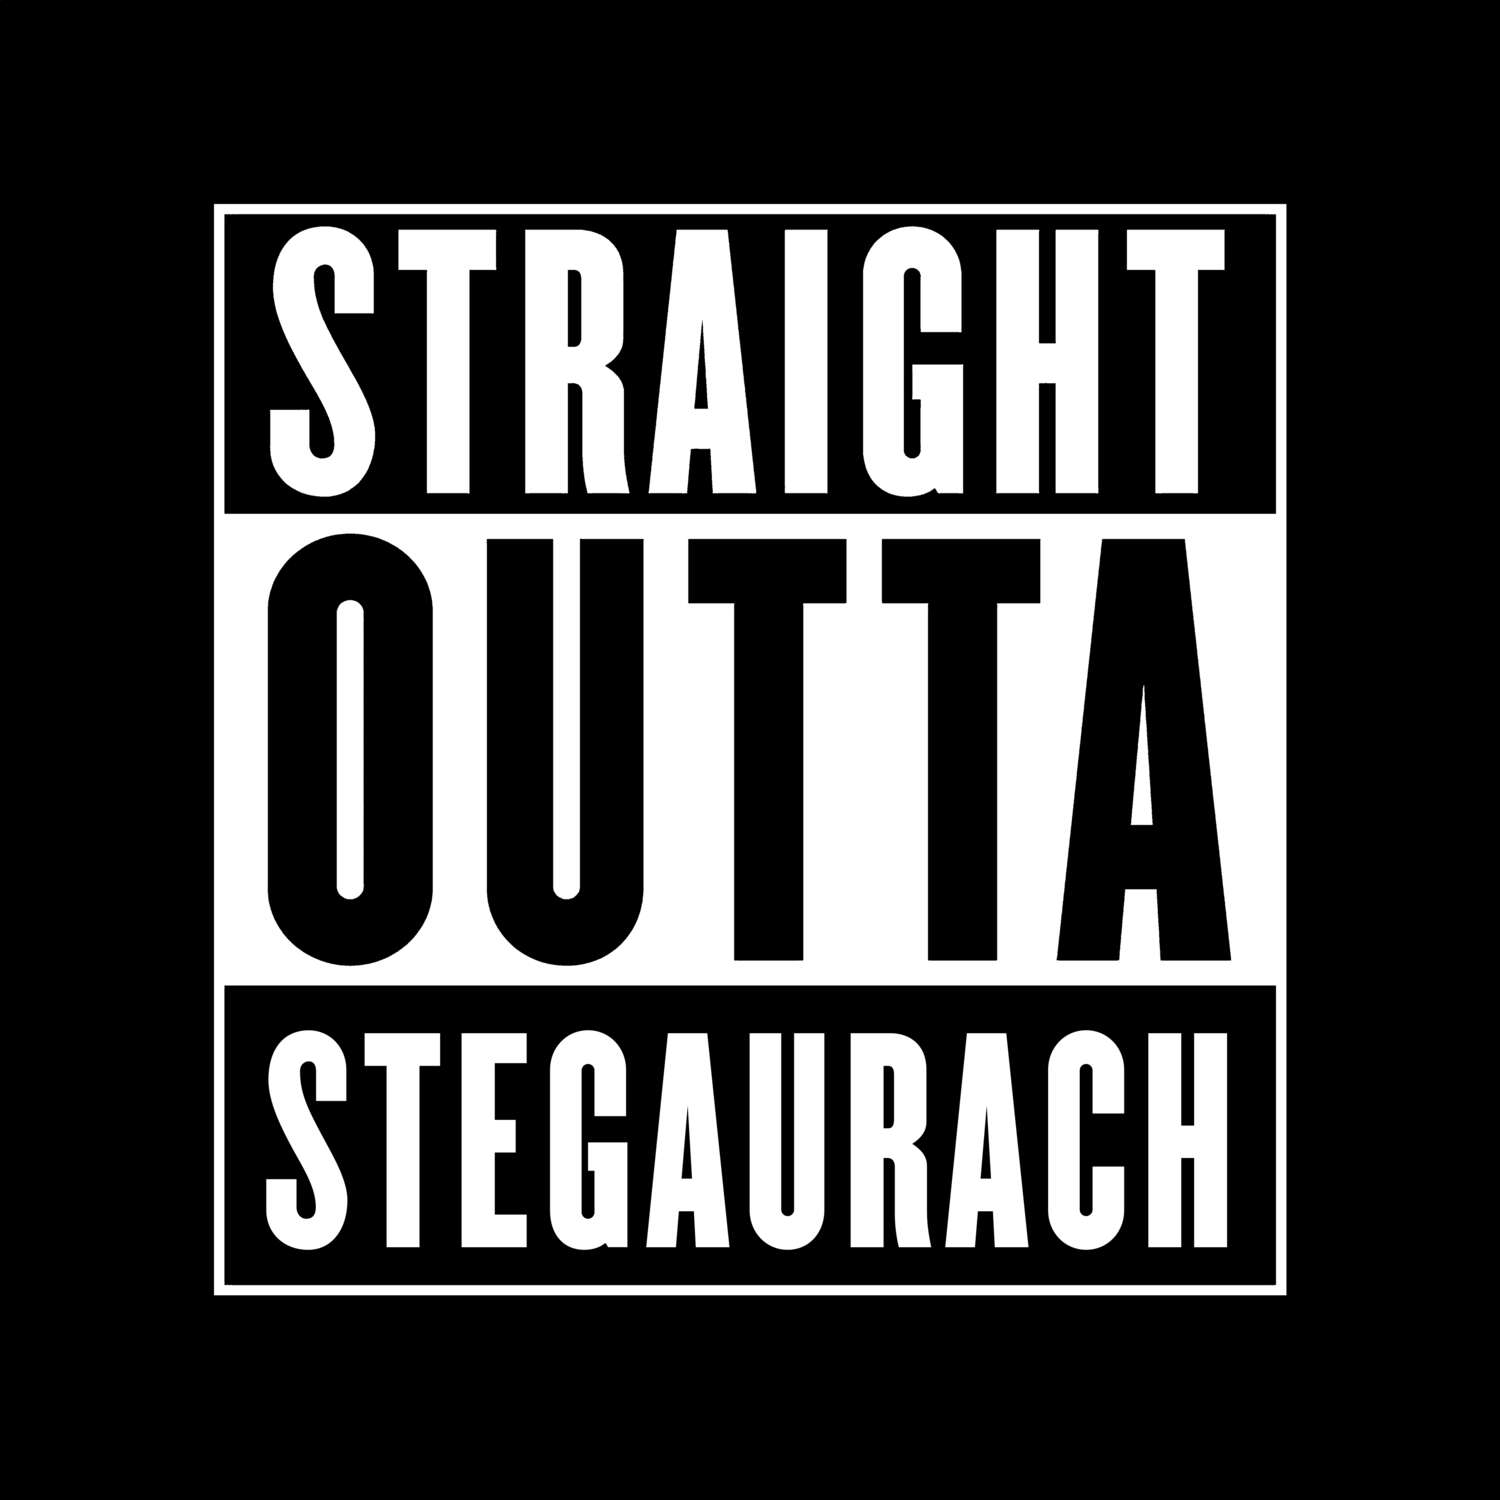 Stegaurach T-Shirt »Straight Outta«